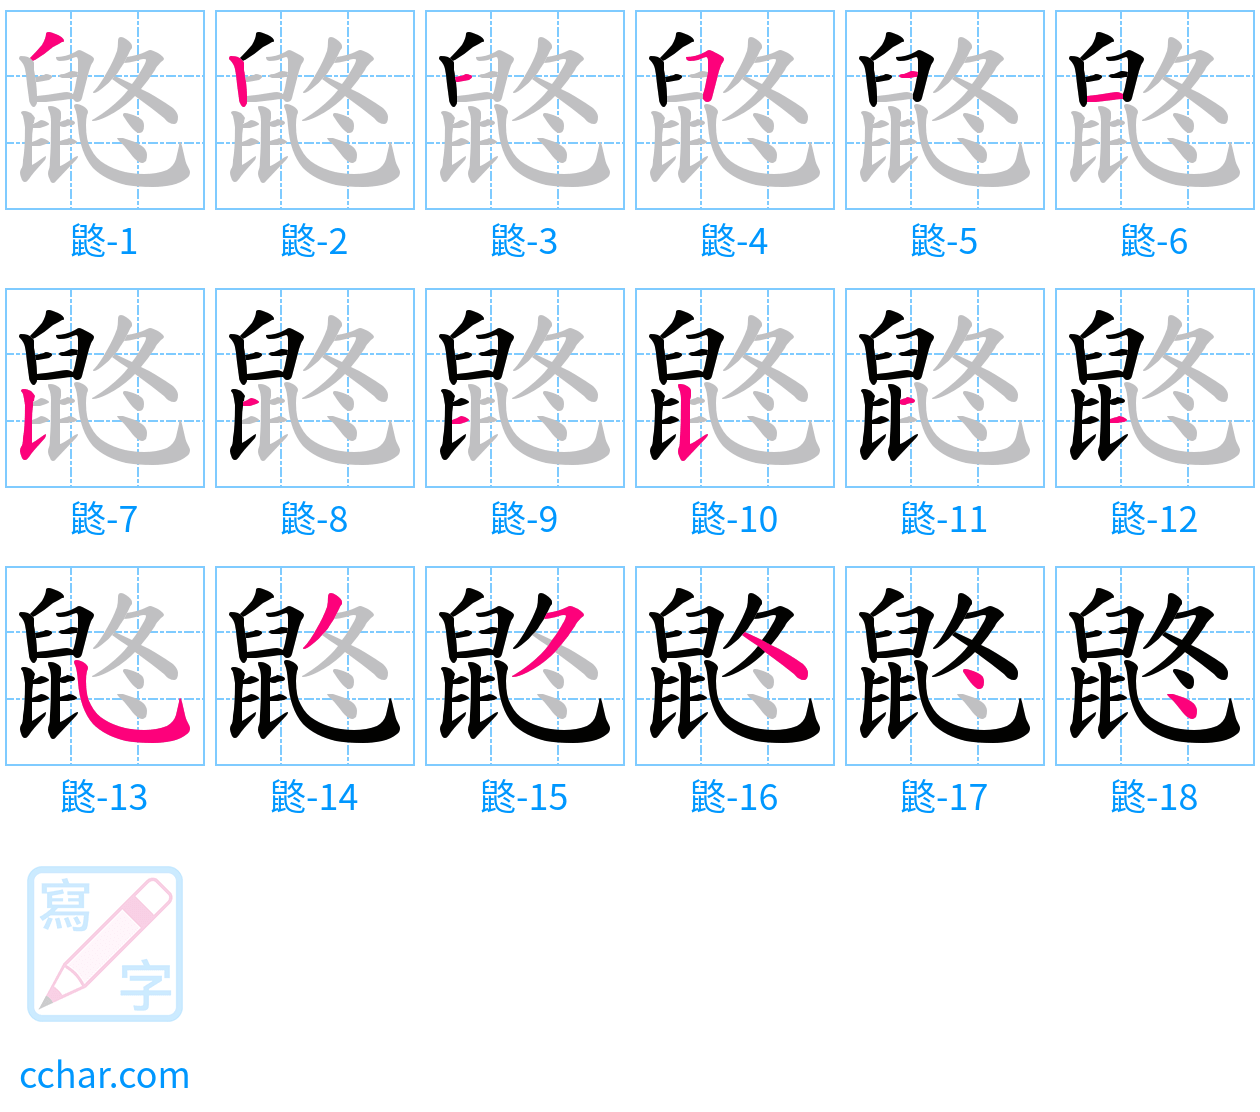 鼨 stroke order step-by-step diagram